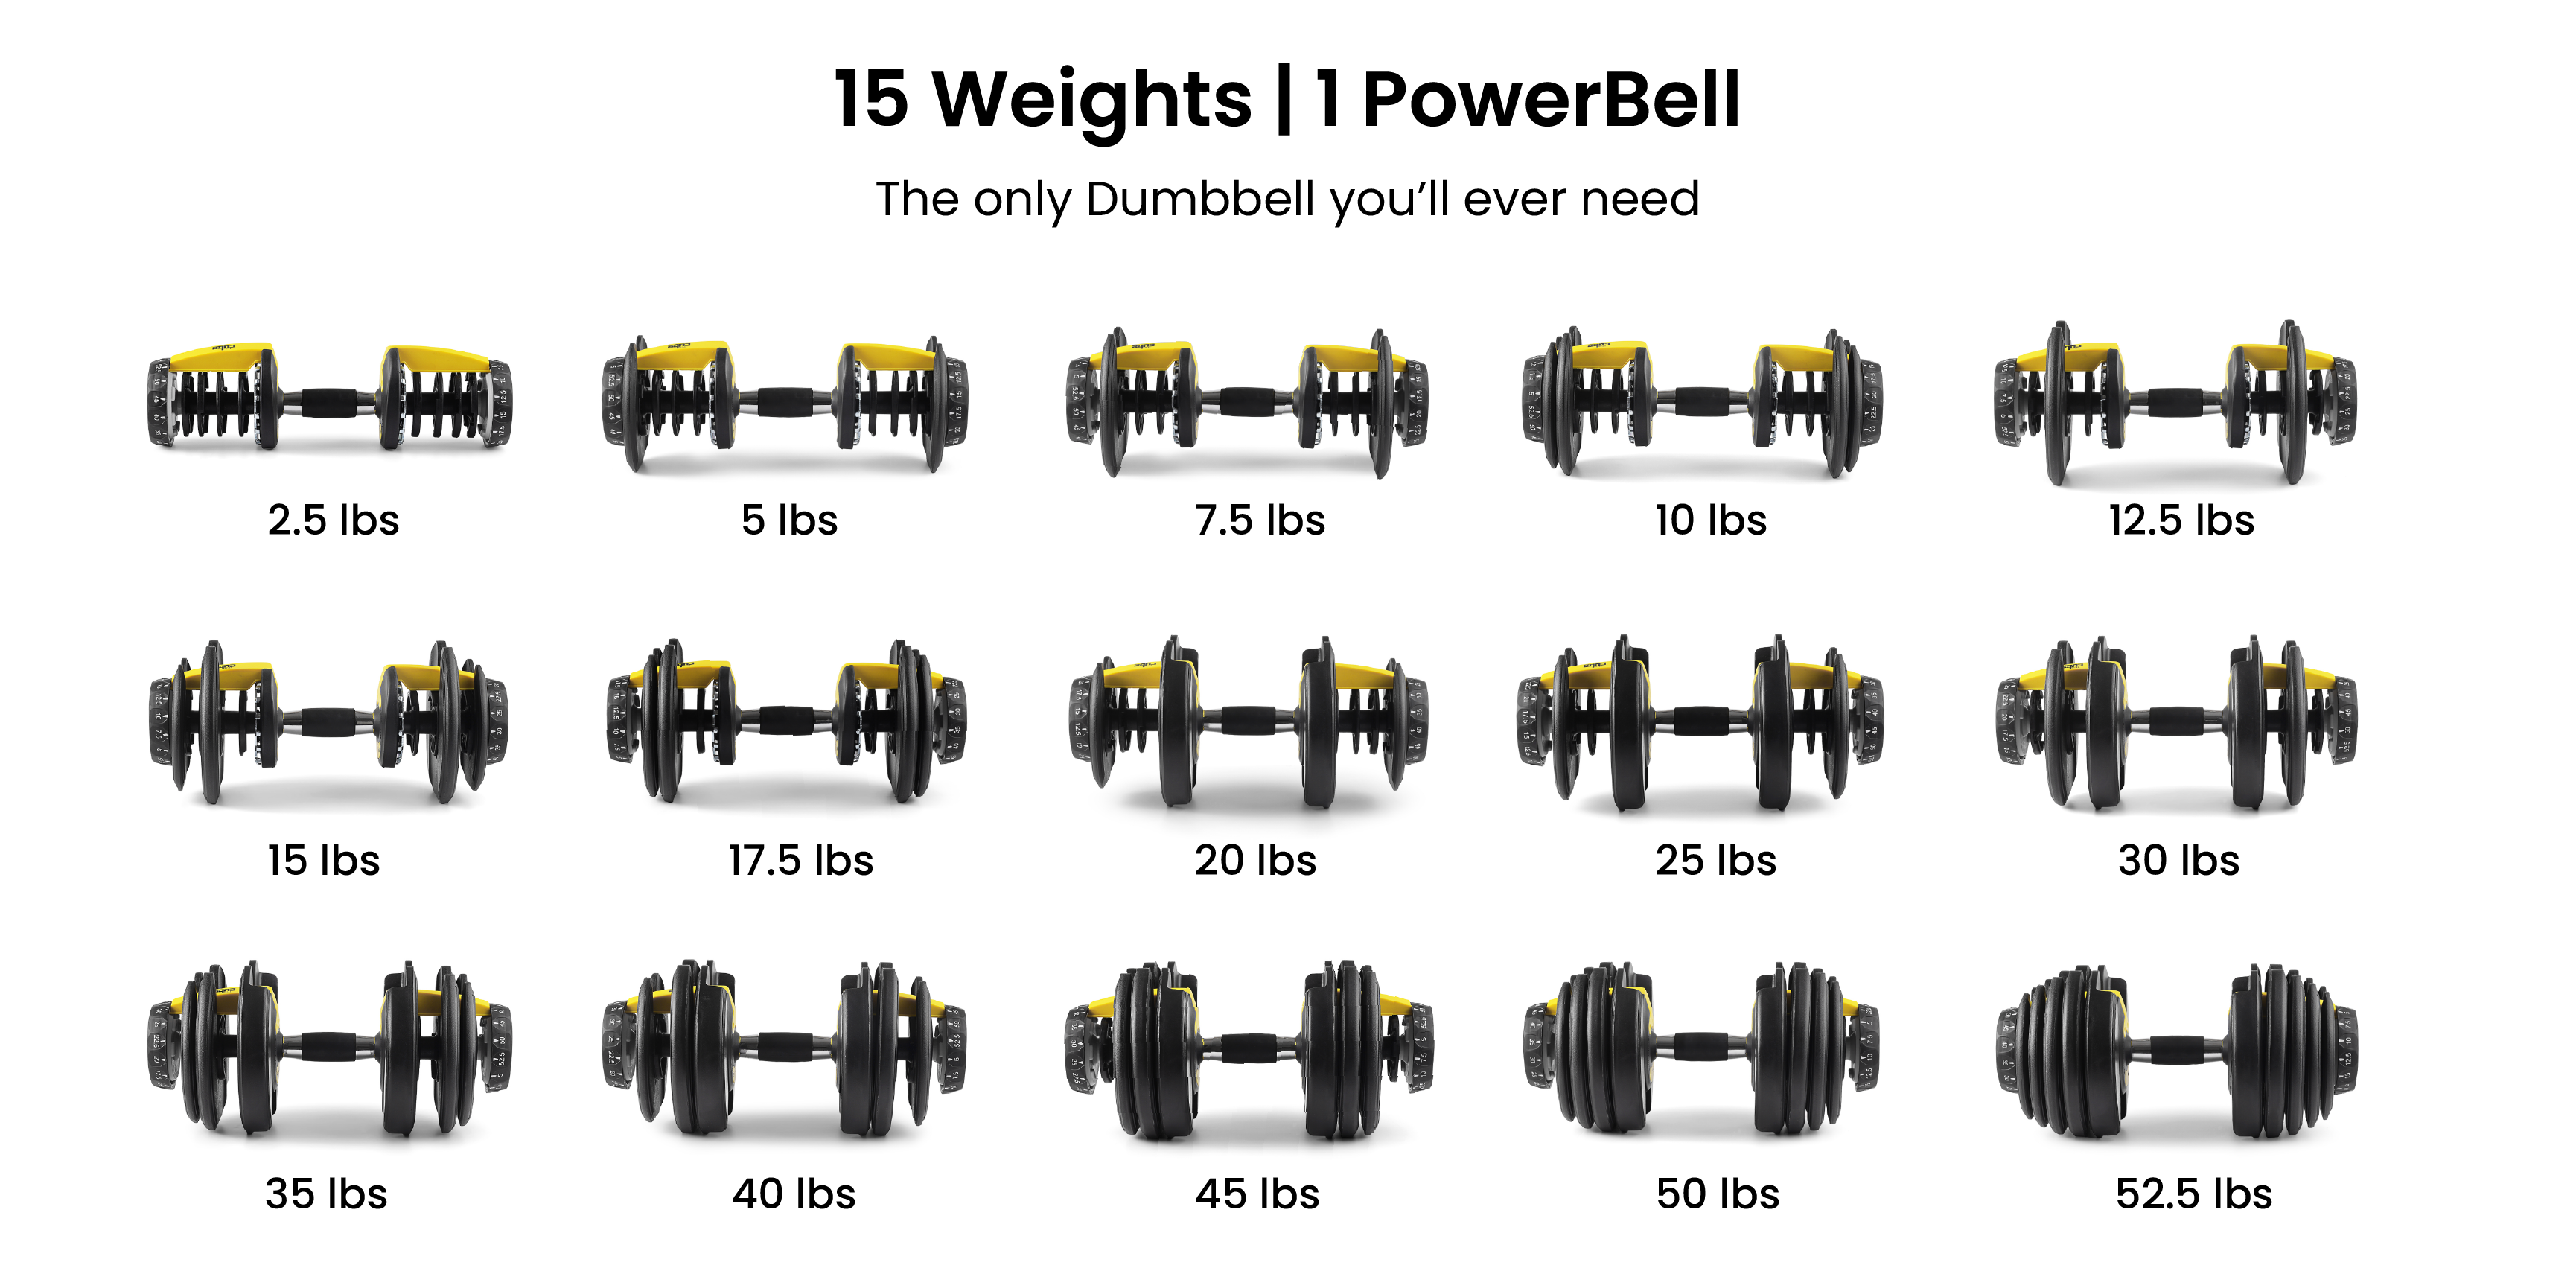 15 Weight Dumbbell | 1 PowerBell